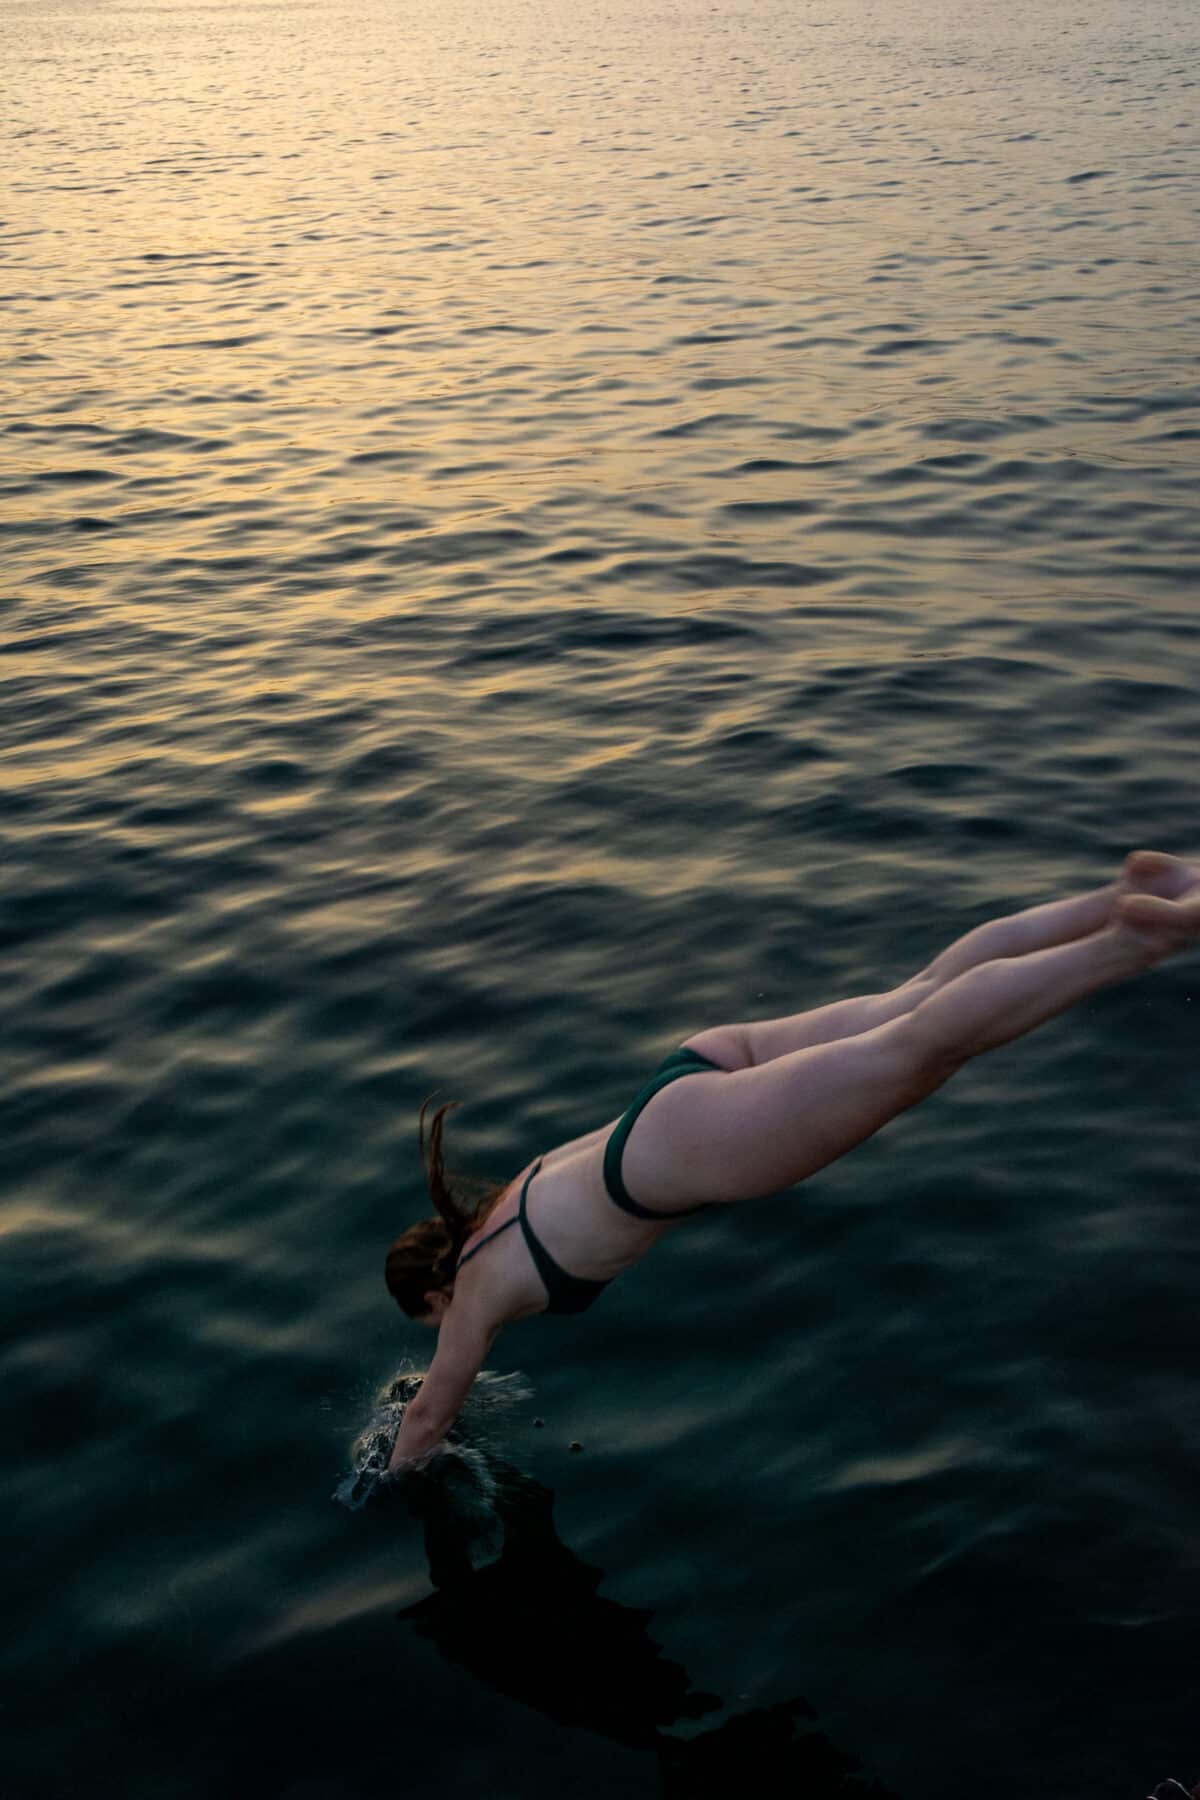 Eine Person taucht bei Sonnenuntergang von einer Segelyacht in ein ruhiges Meer ein, wobei sich ihr Körper in perfekt ausgerichteter, stromlinienförmiger Position knapp über der Wasseroberfläche befindet.